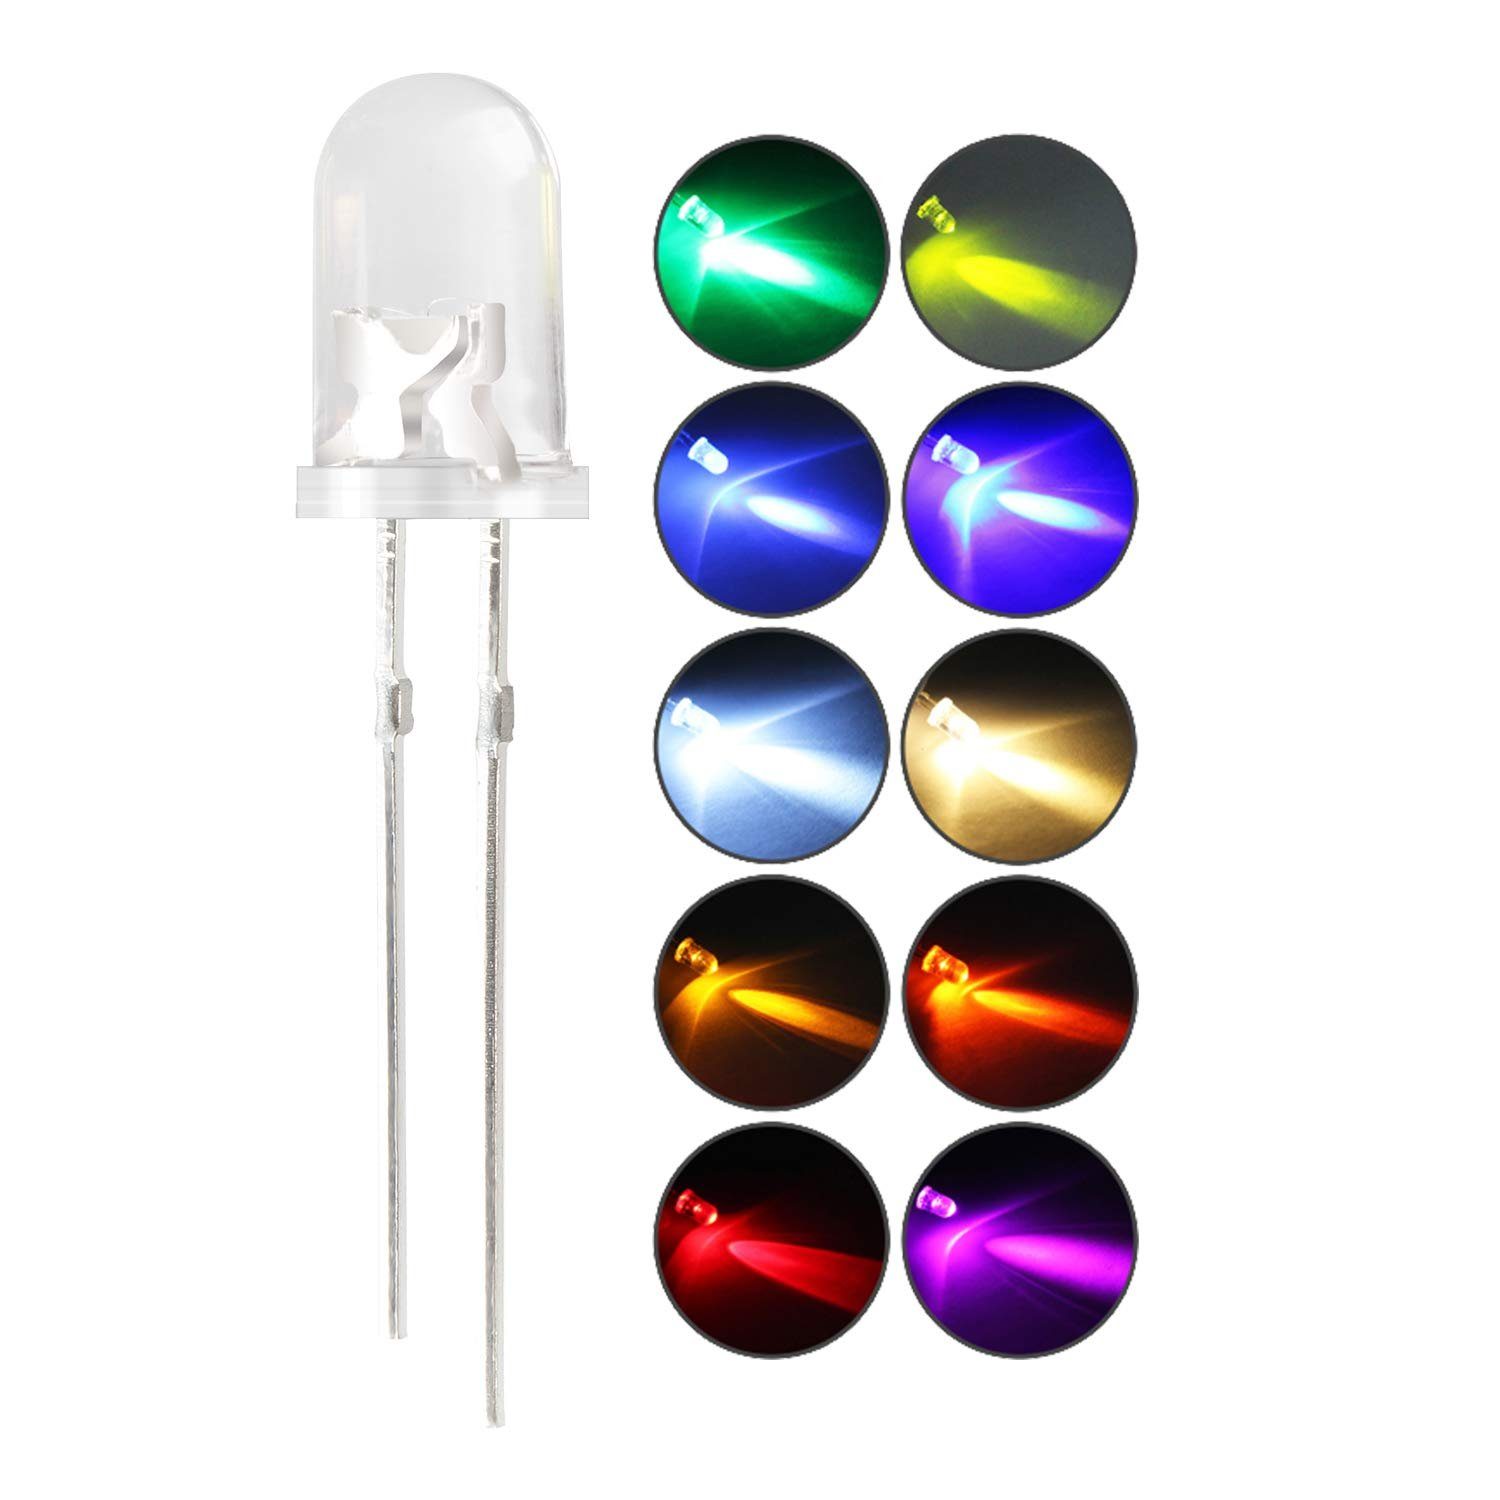 Ogeled LED-Leuchtmittel 3mm, 5mm, LED, Dioden, Leuchtdiode, Lampe, Diodenlichter, Glühbirnen, 10 St., in grün, blau, rot, gelb, orange, weiß, warmweiß, pink, cyan, UV | Leuchtmittel